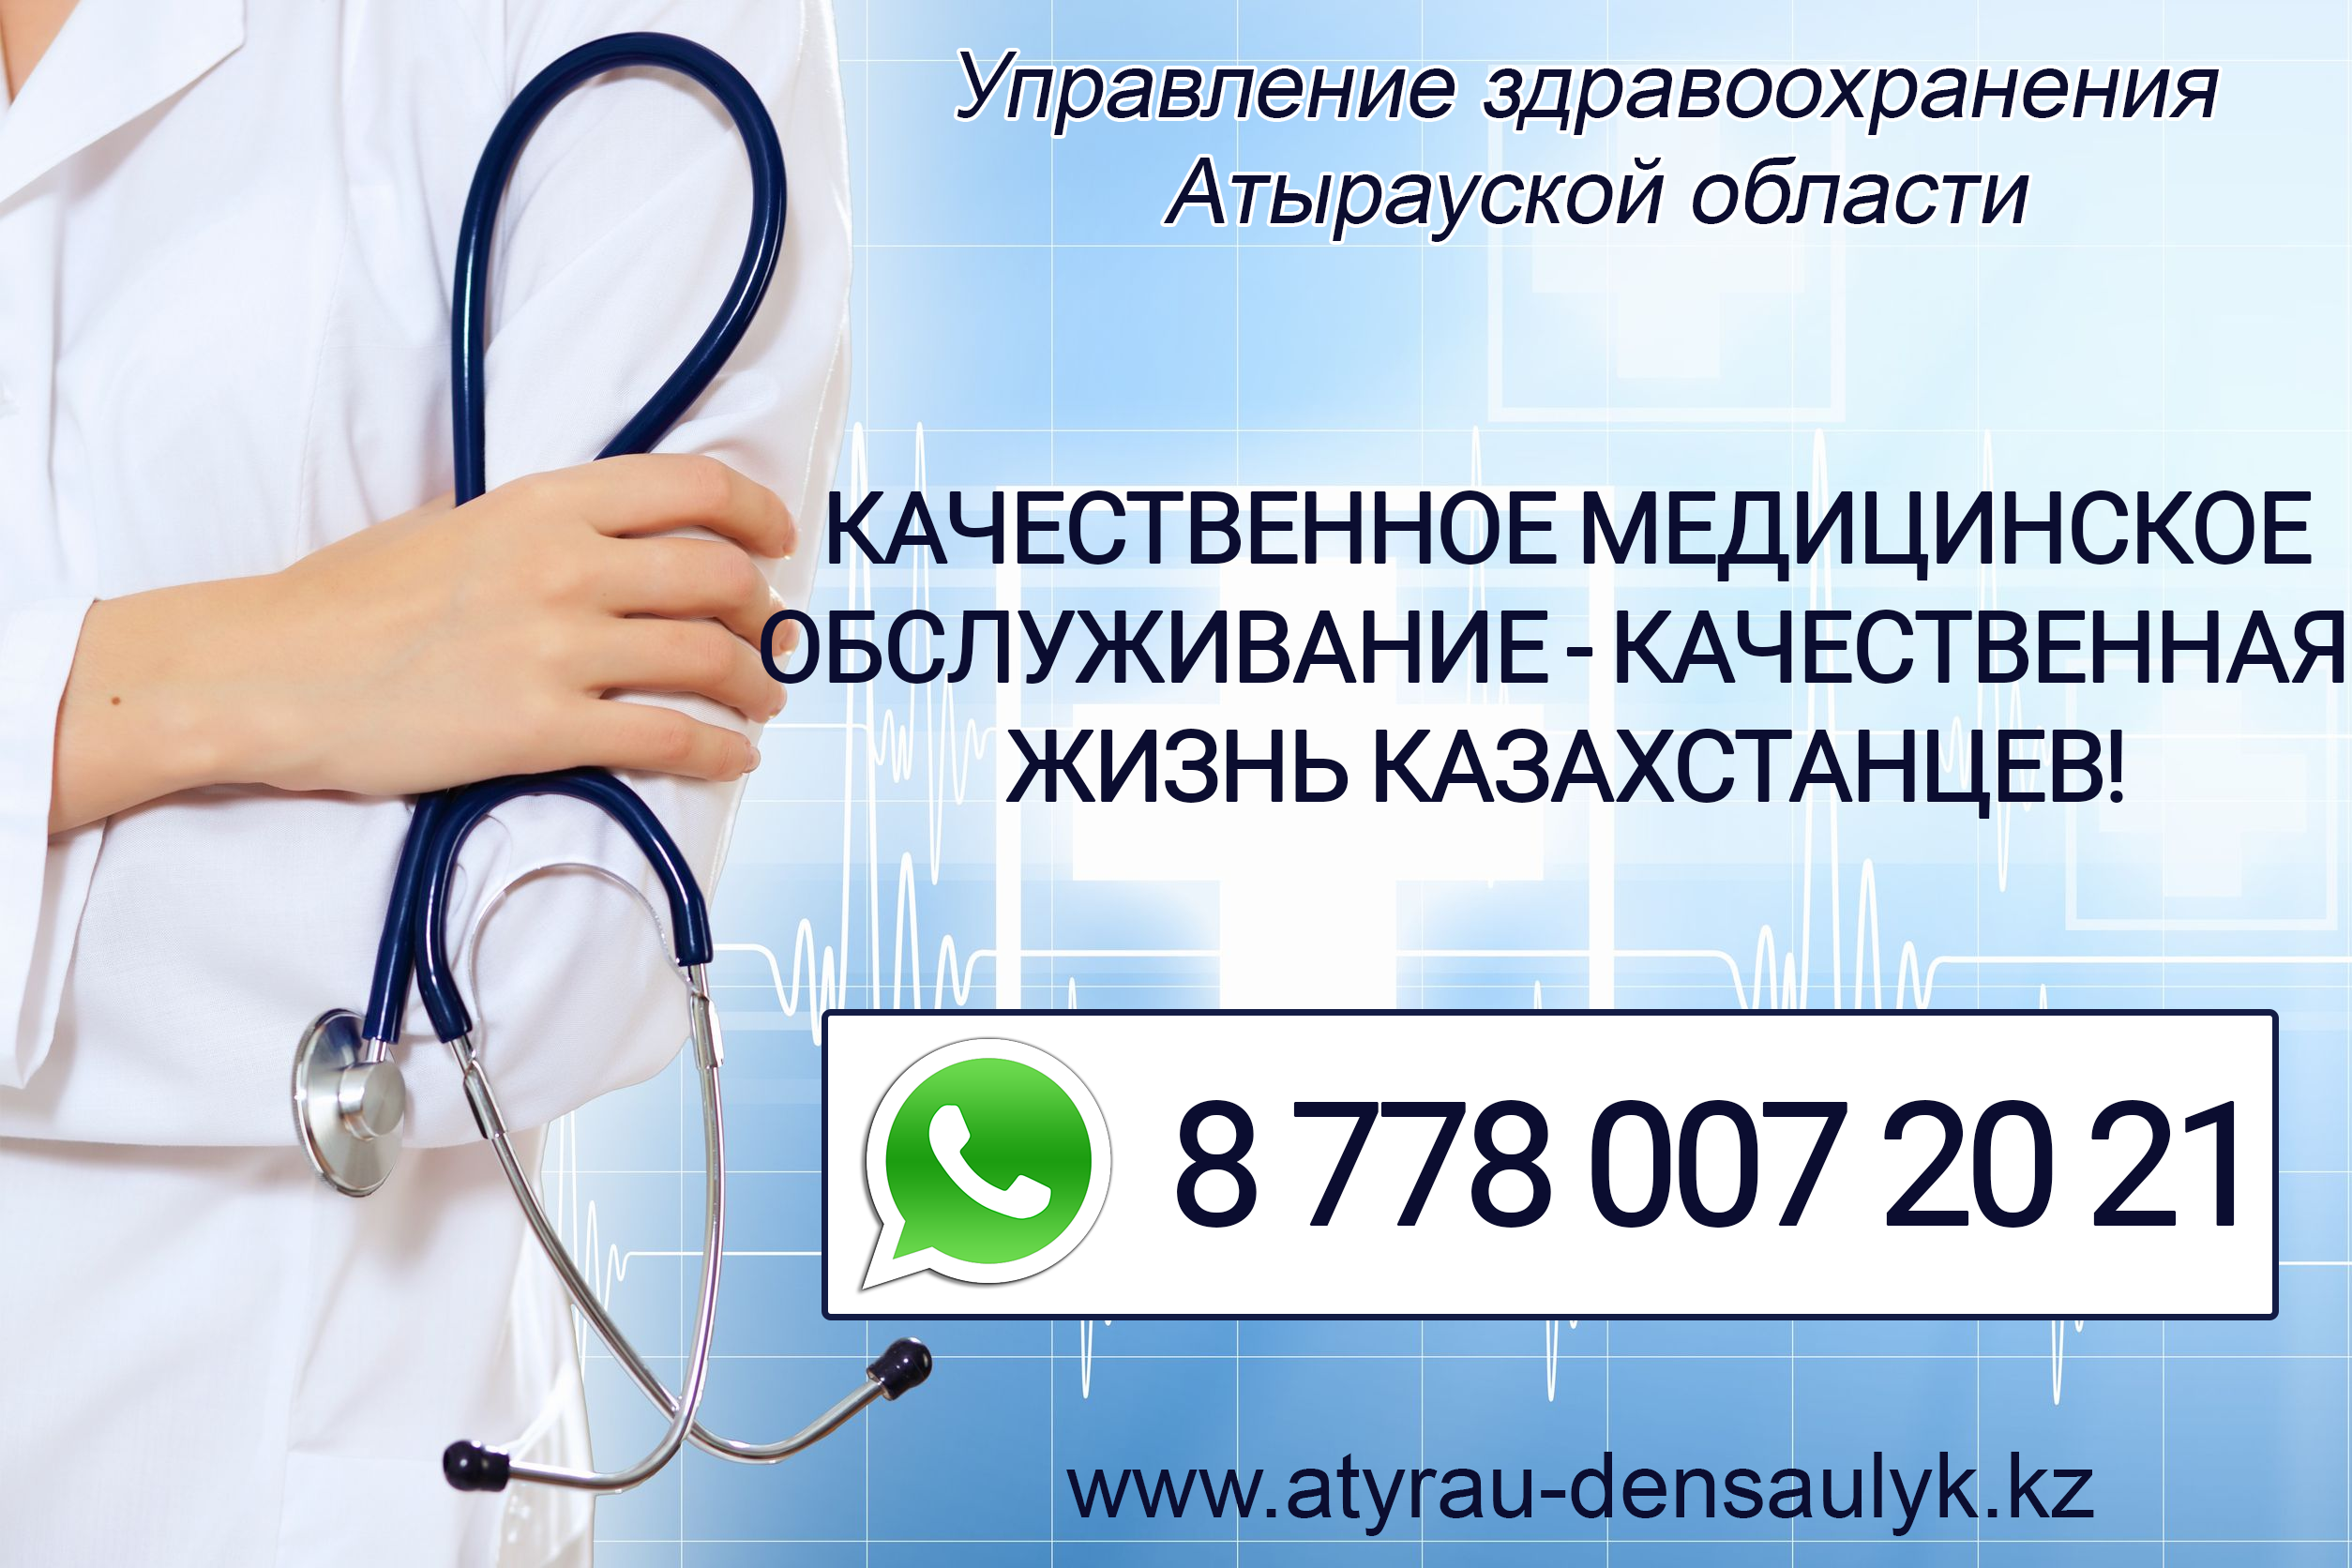 Телефон управления здравоохранения